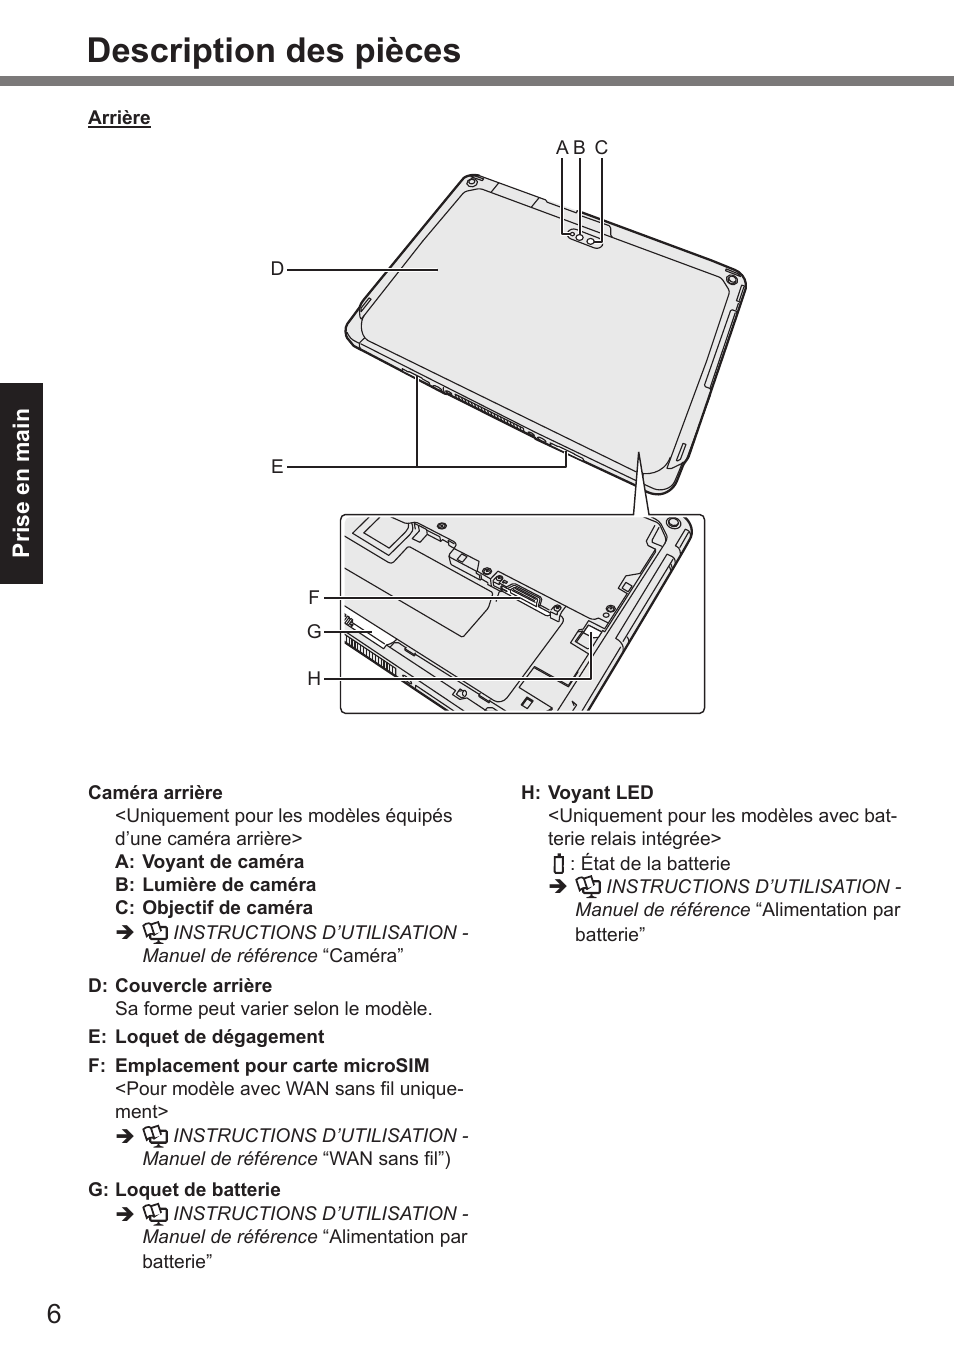 Description des pièces | Panasonic Toughpad FZ-A2 Manuel d'utilisation | Page 6 / 30